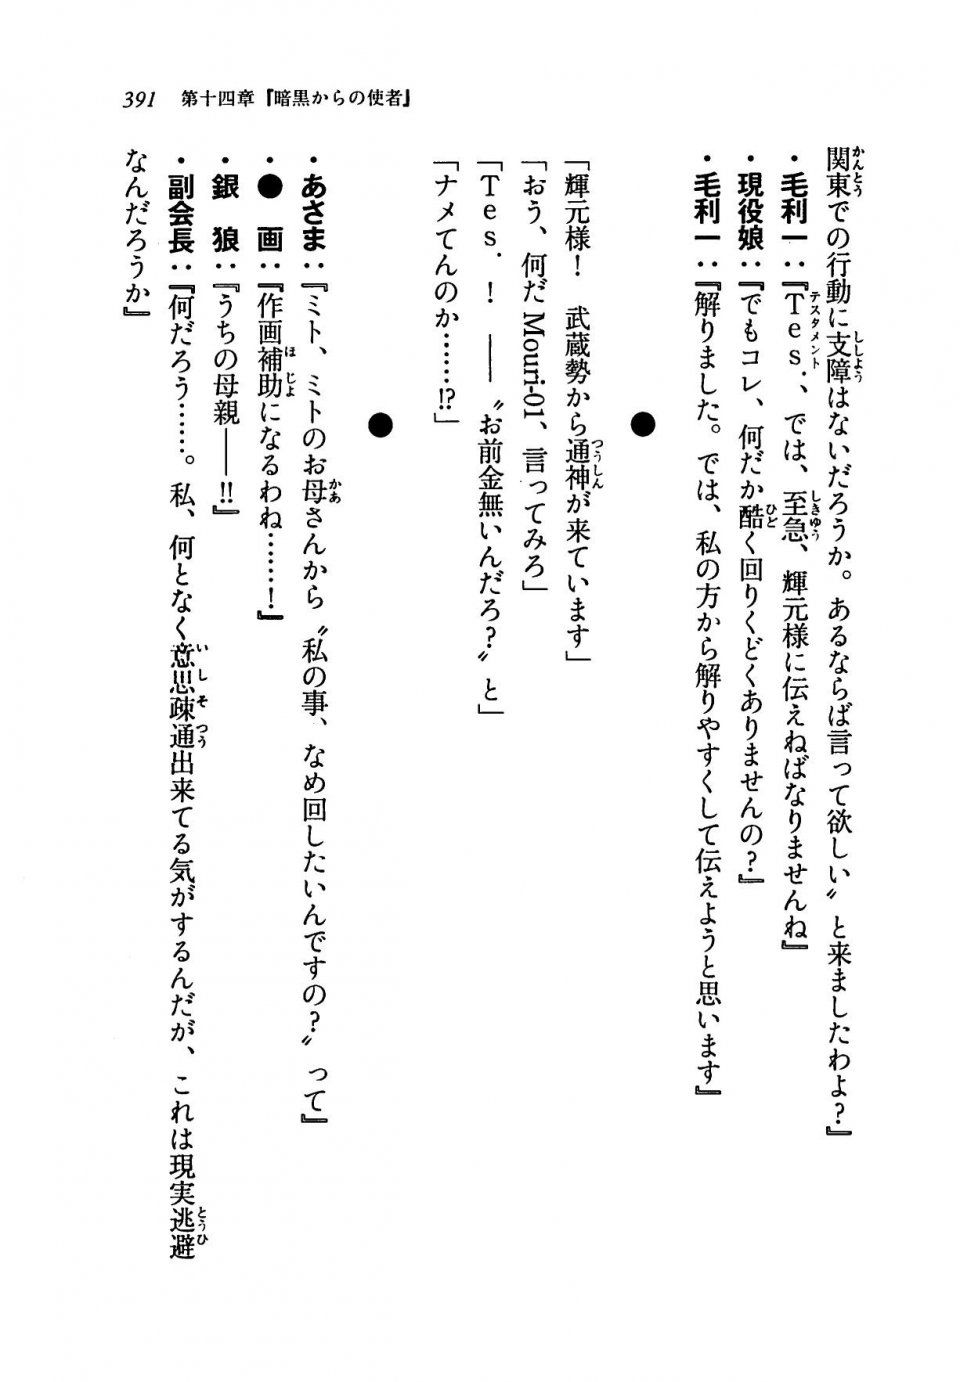 Kyoukai Senjou no Horizon LN Vol 19(8A) - Photo #391